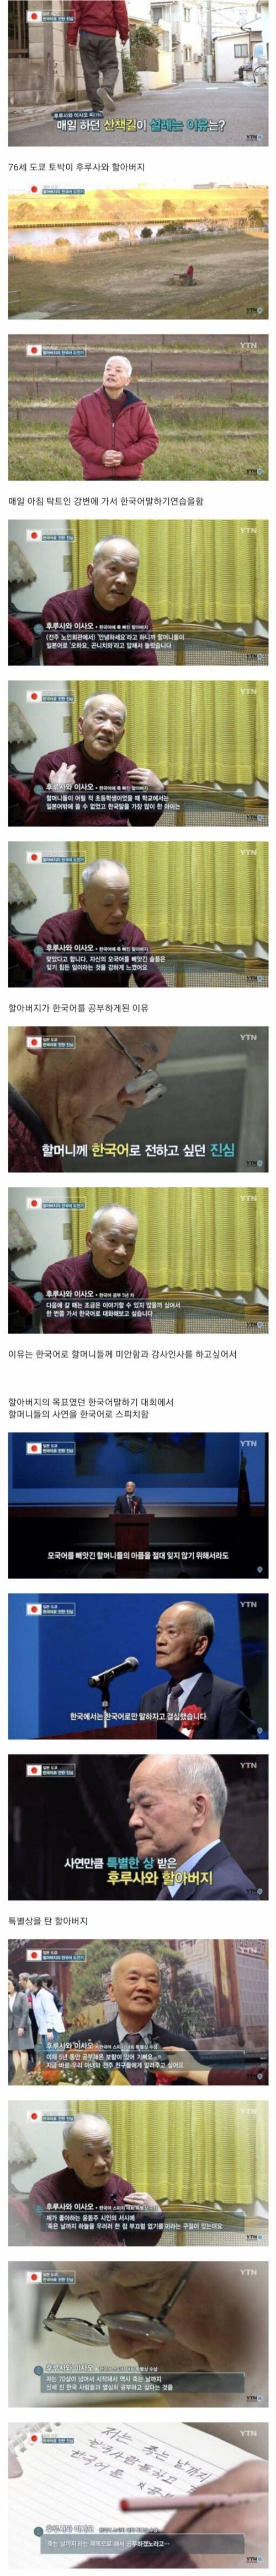 일본 할아버지가 5년째 한국어를 배우는이유